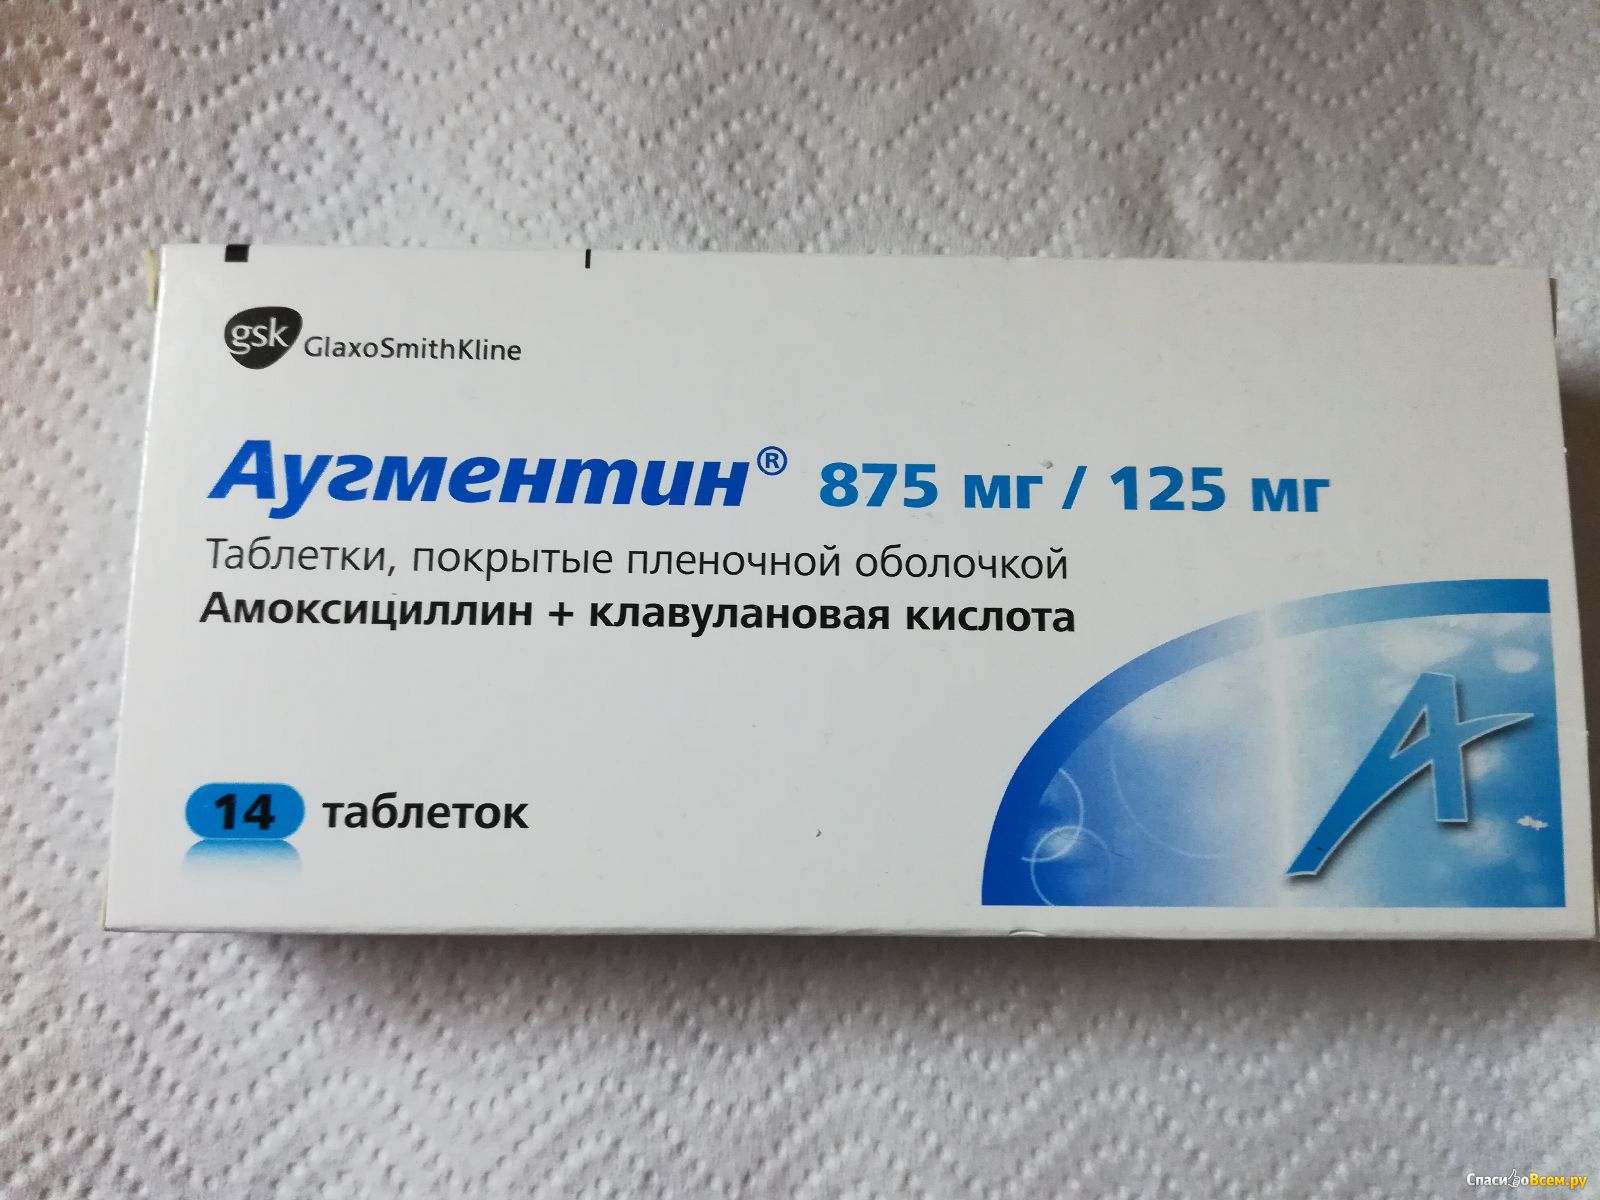 Можно ли принять аугментин. Аугментин 875/125. Антибиотик от гайморита Аугментин. Аугментин таблетки 875/125. Аугментин антибиотик таблетки.